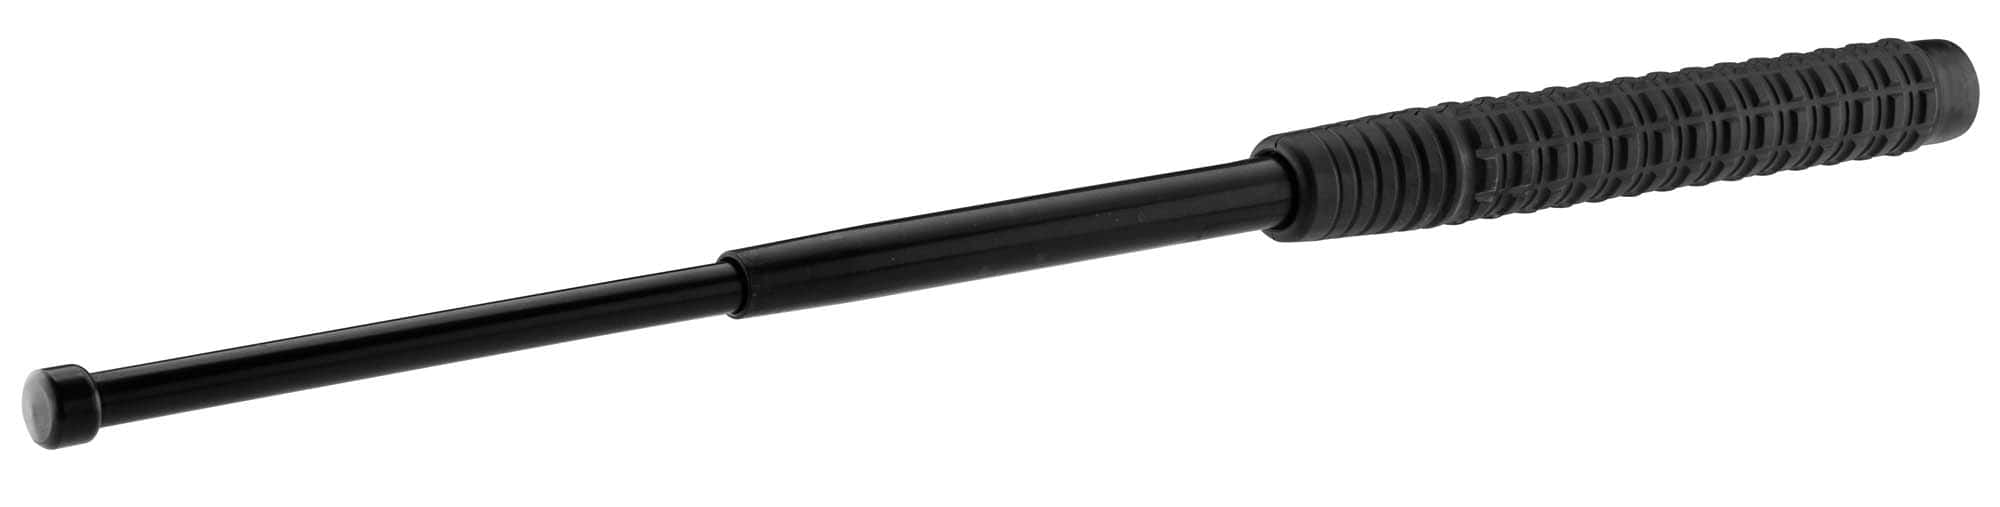 Matraque télescopique ESP 40cm - Bâton de défense professionnel